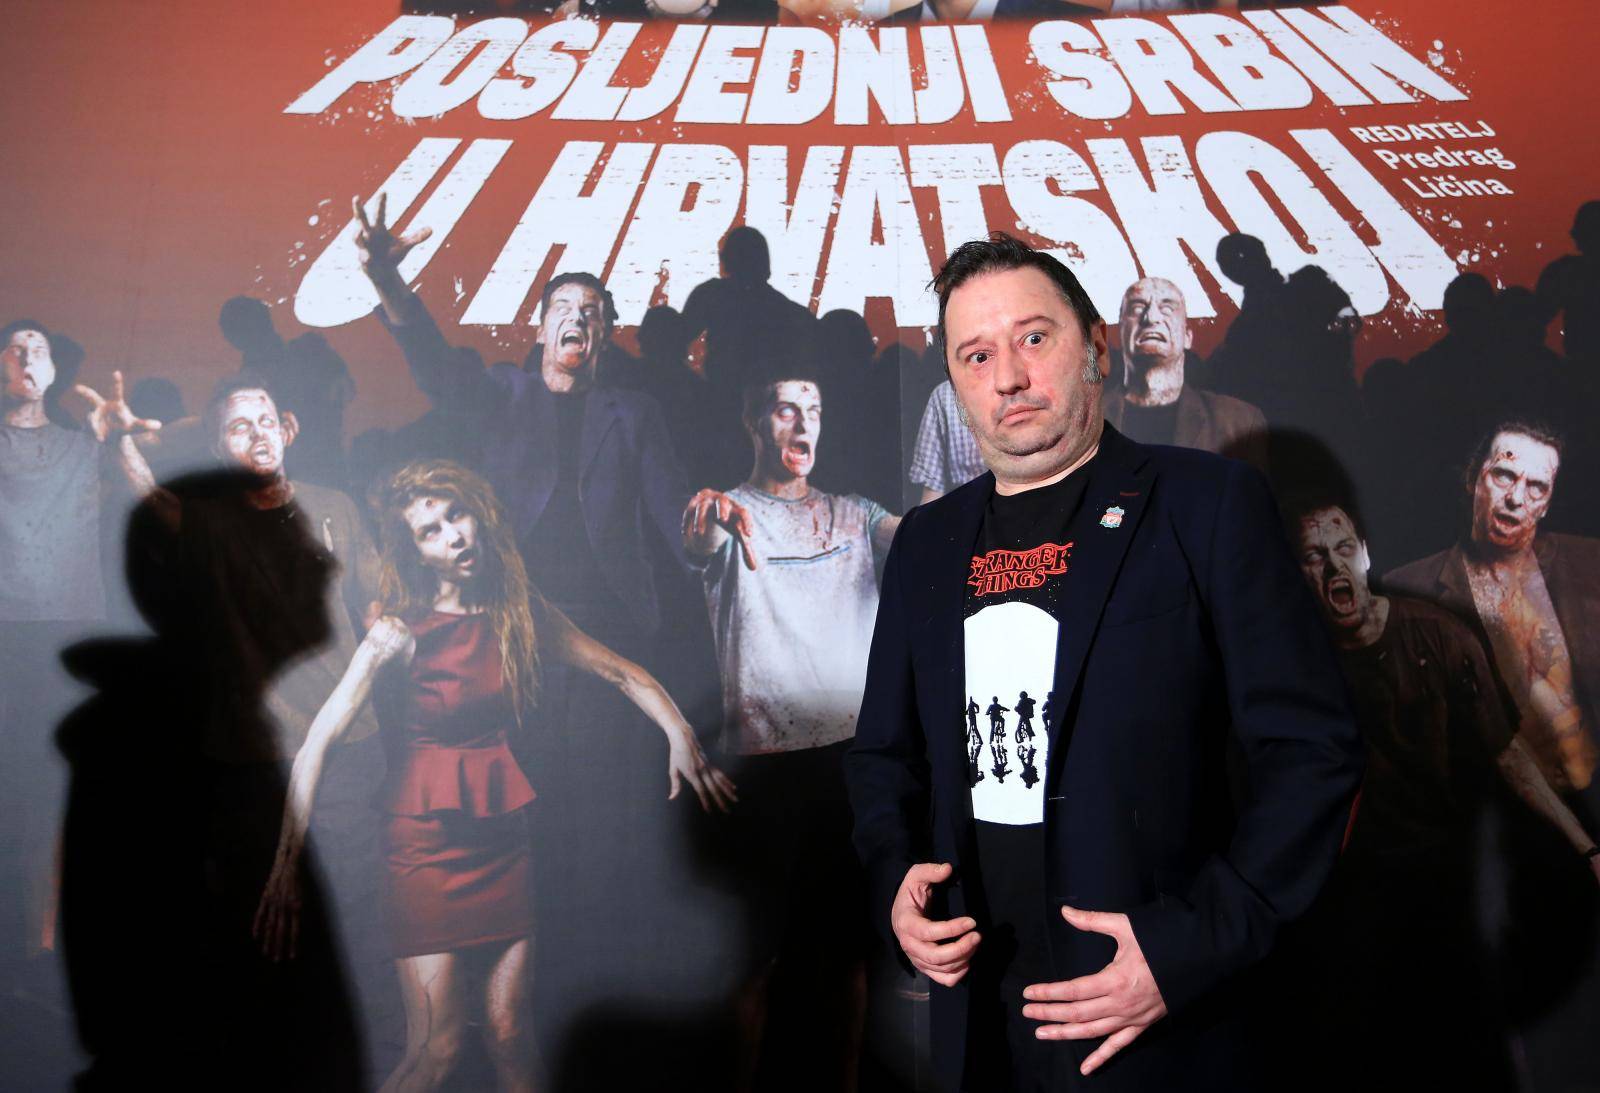 Zagreb: Premijera prve hrvatske zombi komedije iz budućnosti Posljednji Srbin u Hrvatskoj